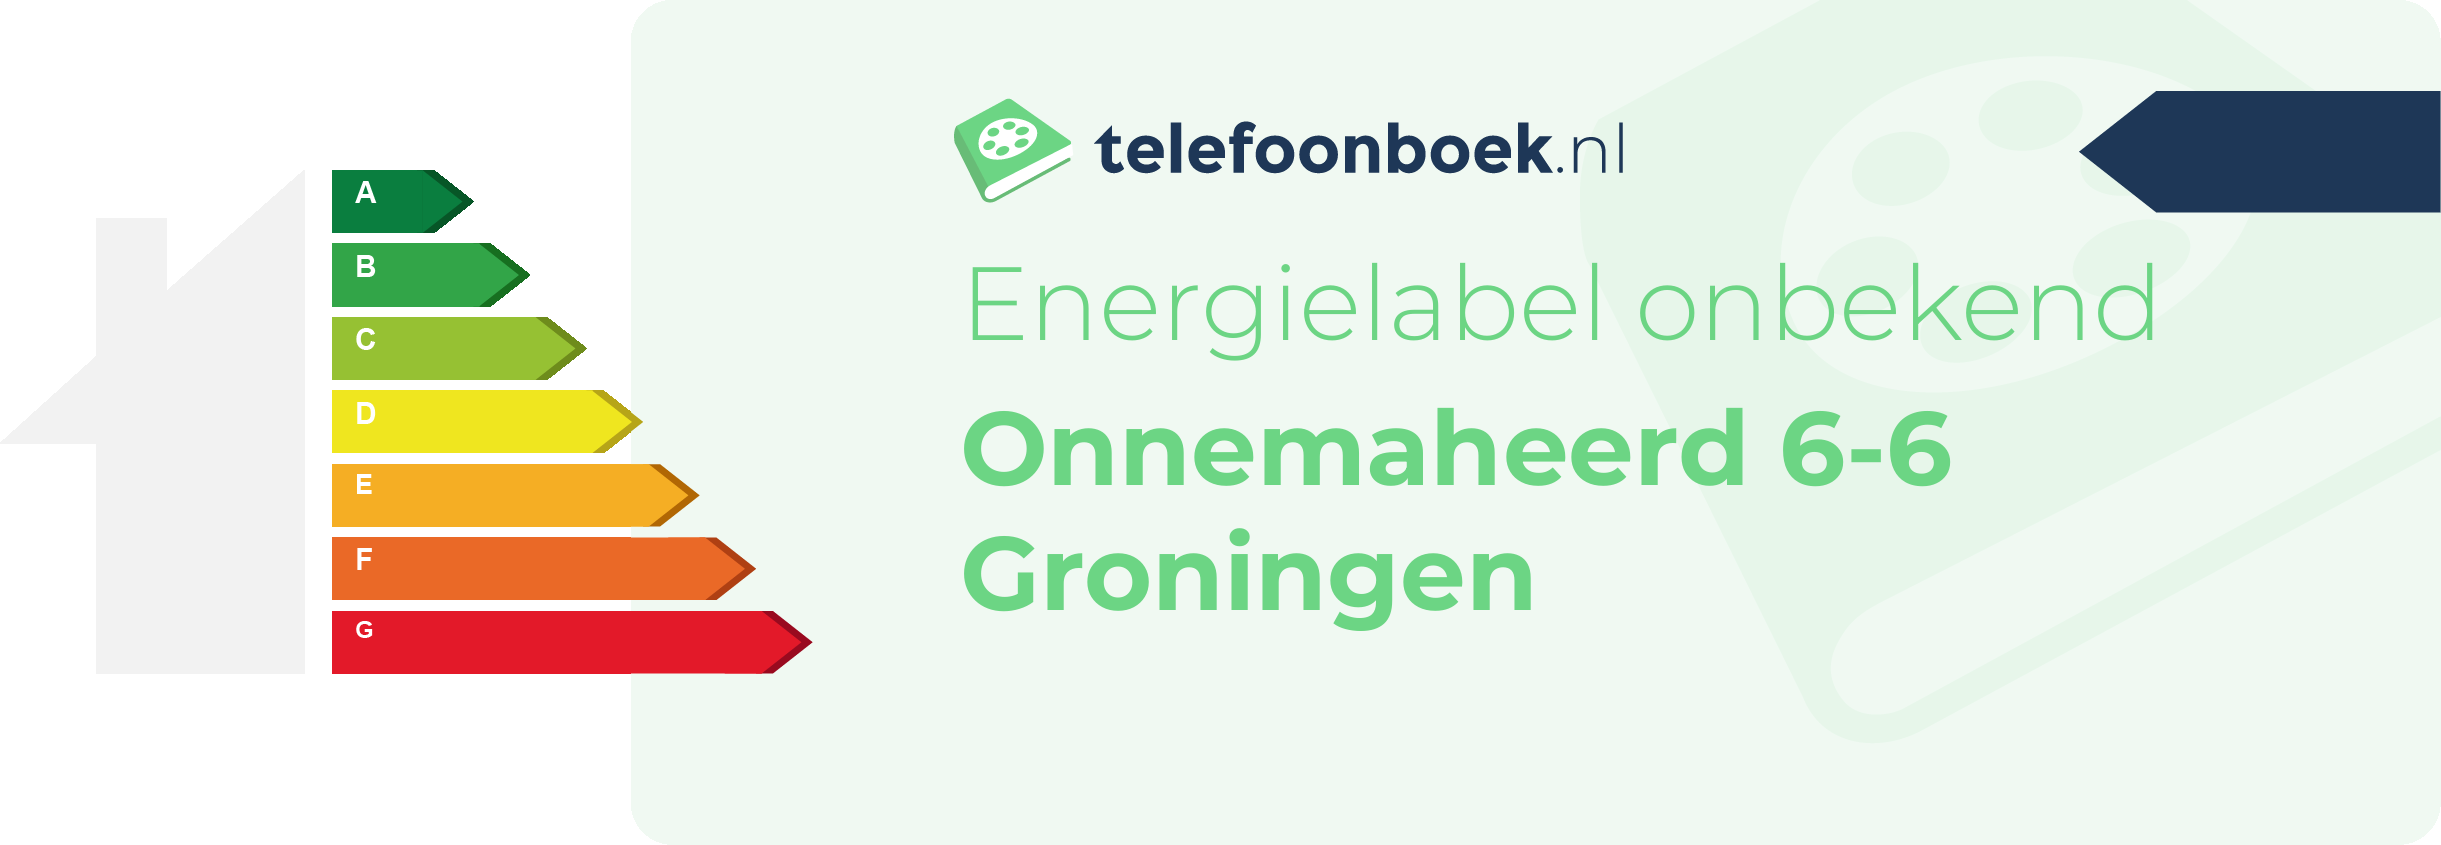 Energielabel Onnemaheerd 6-6 Groningen